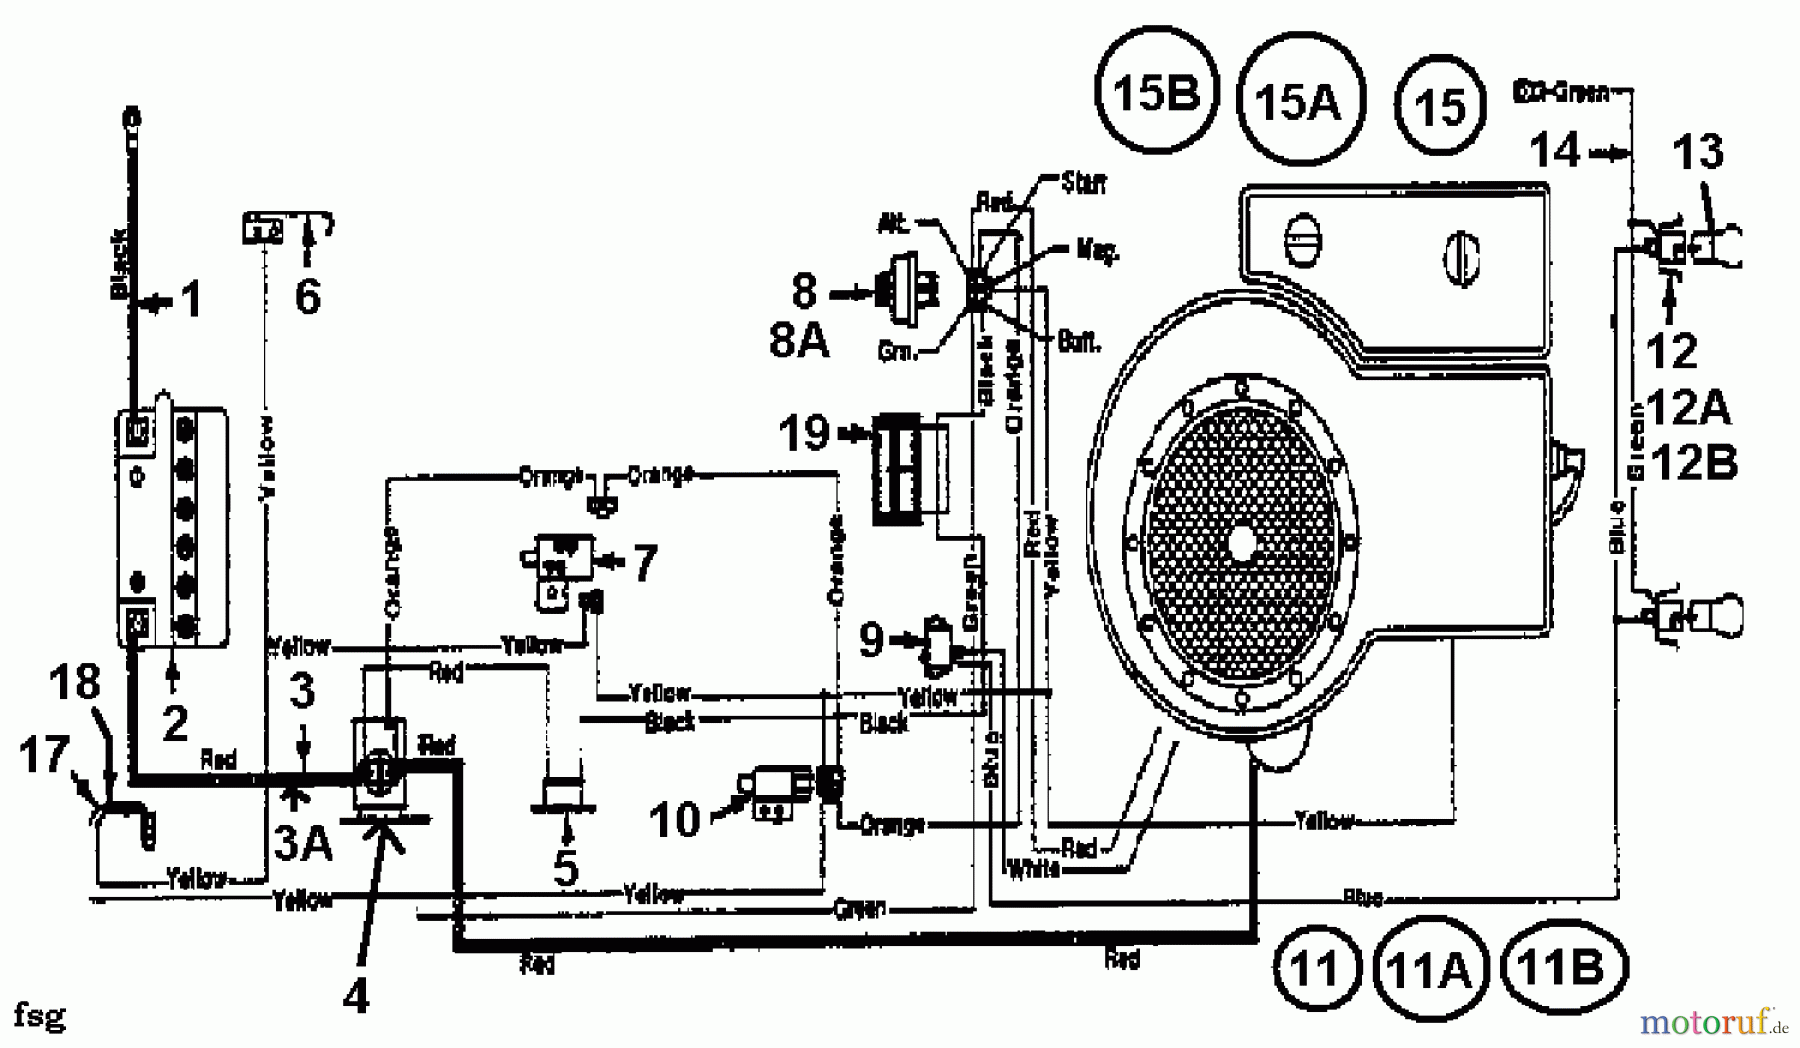  Gardol Rasentraktoren 12/91 133I471E668  (1993) Schaltplan Einzylinder